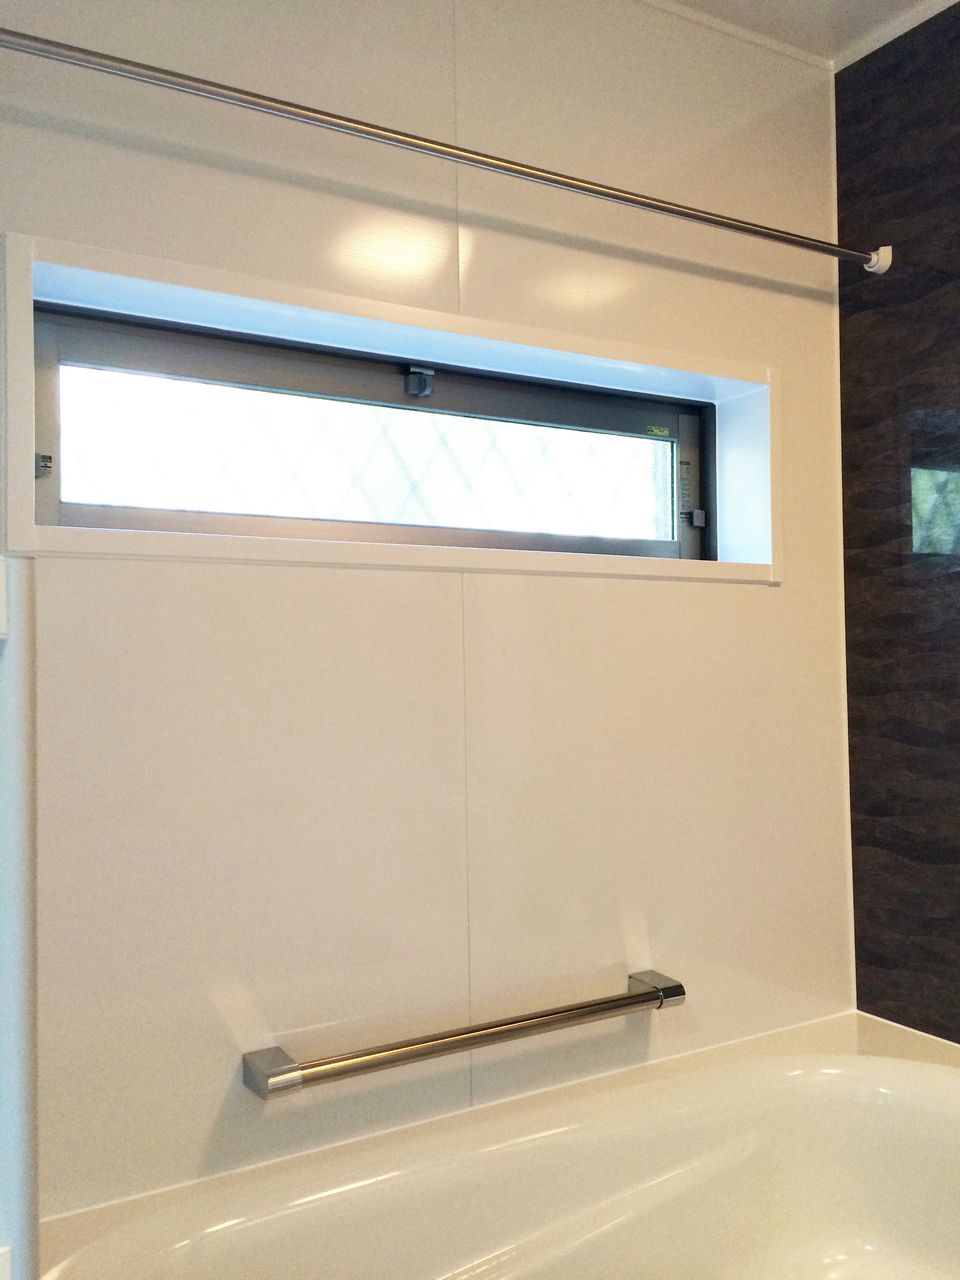 10件 浴室 窓 おすすめの画像 浴室 窓 窓 バスルーム